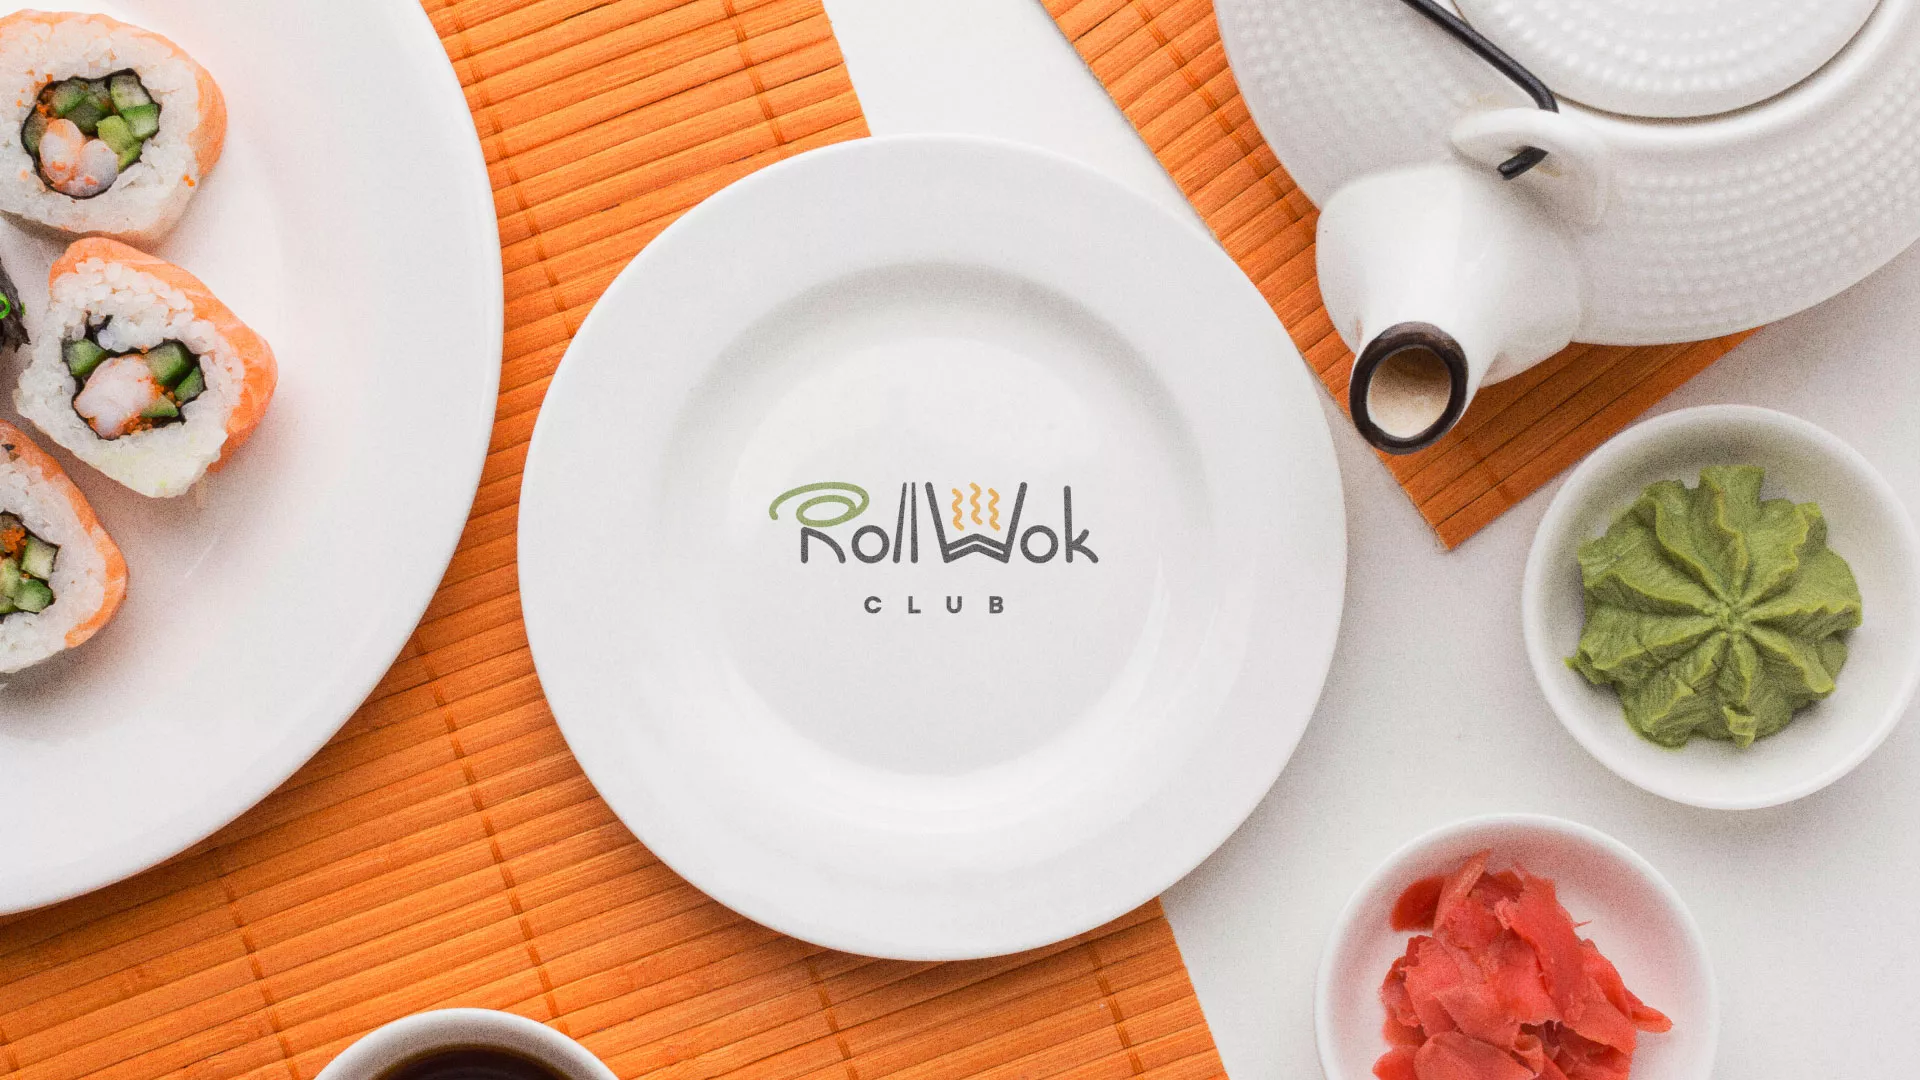 Разработка логотипа и фирменного стиля суши-бара «Roll Wok Club» в Болотном